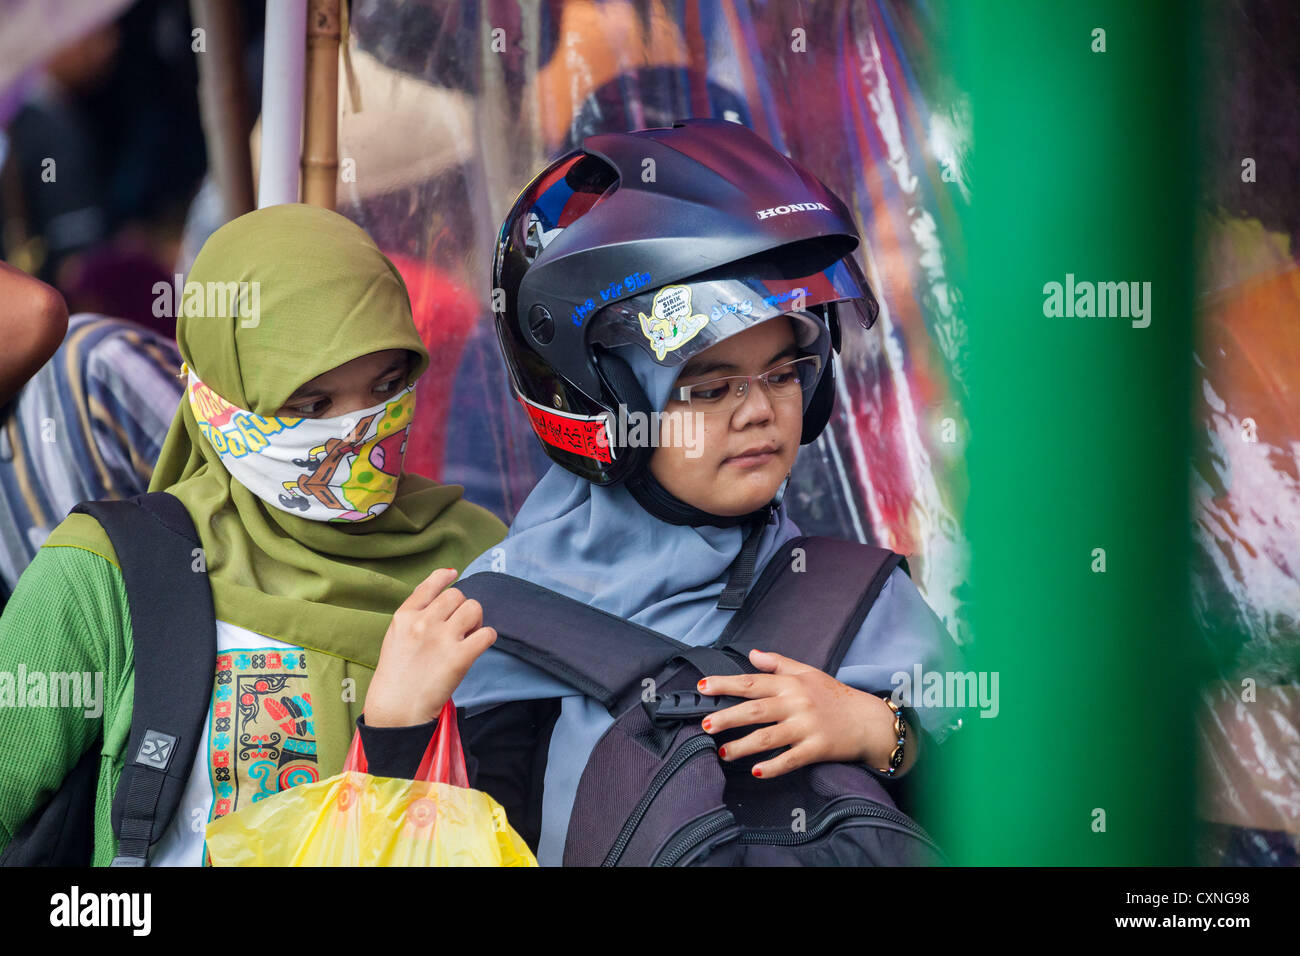 Woman with Helmet in Yogyakarta Stock Photo